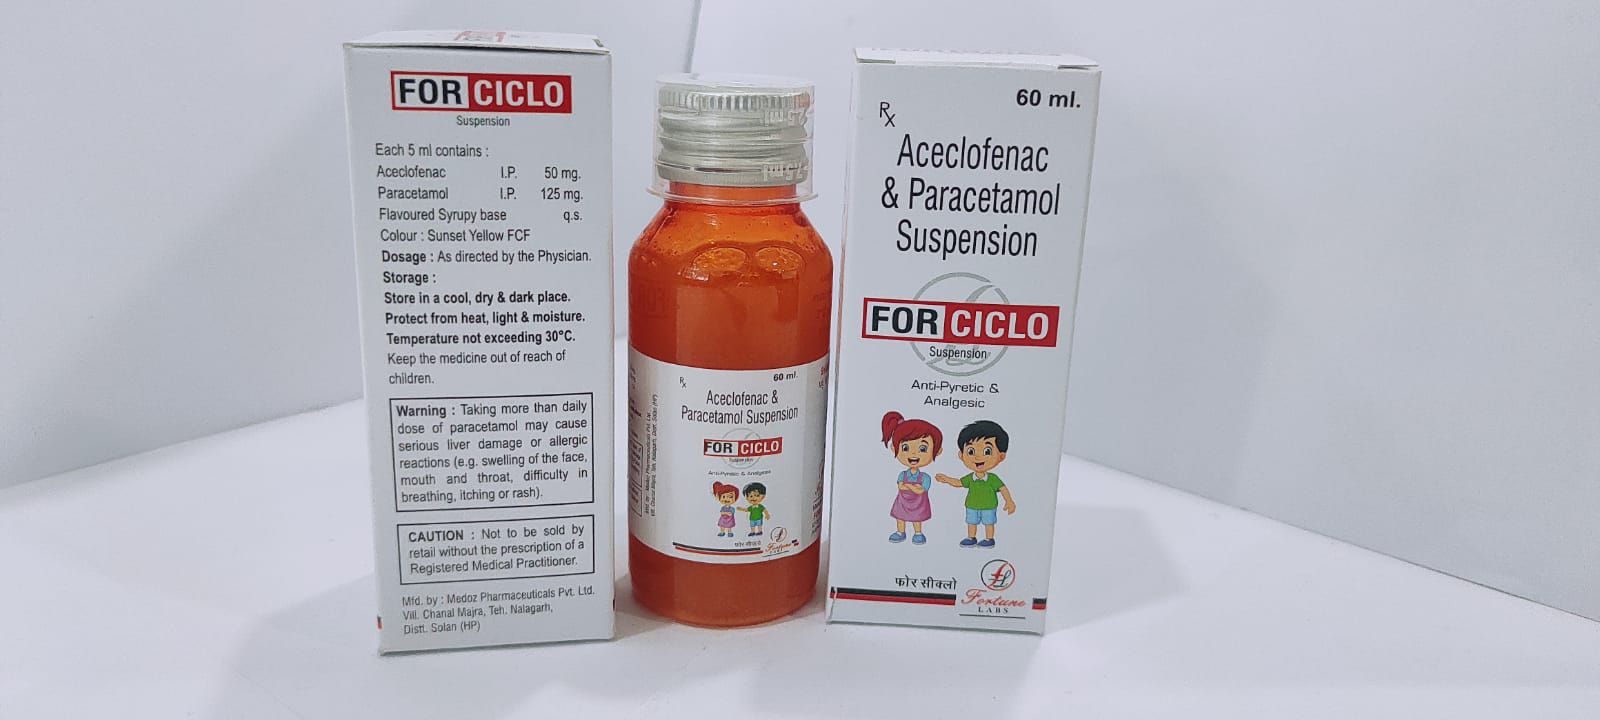 aceclofenac 50mg + paracetamol 125mg